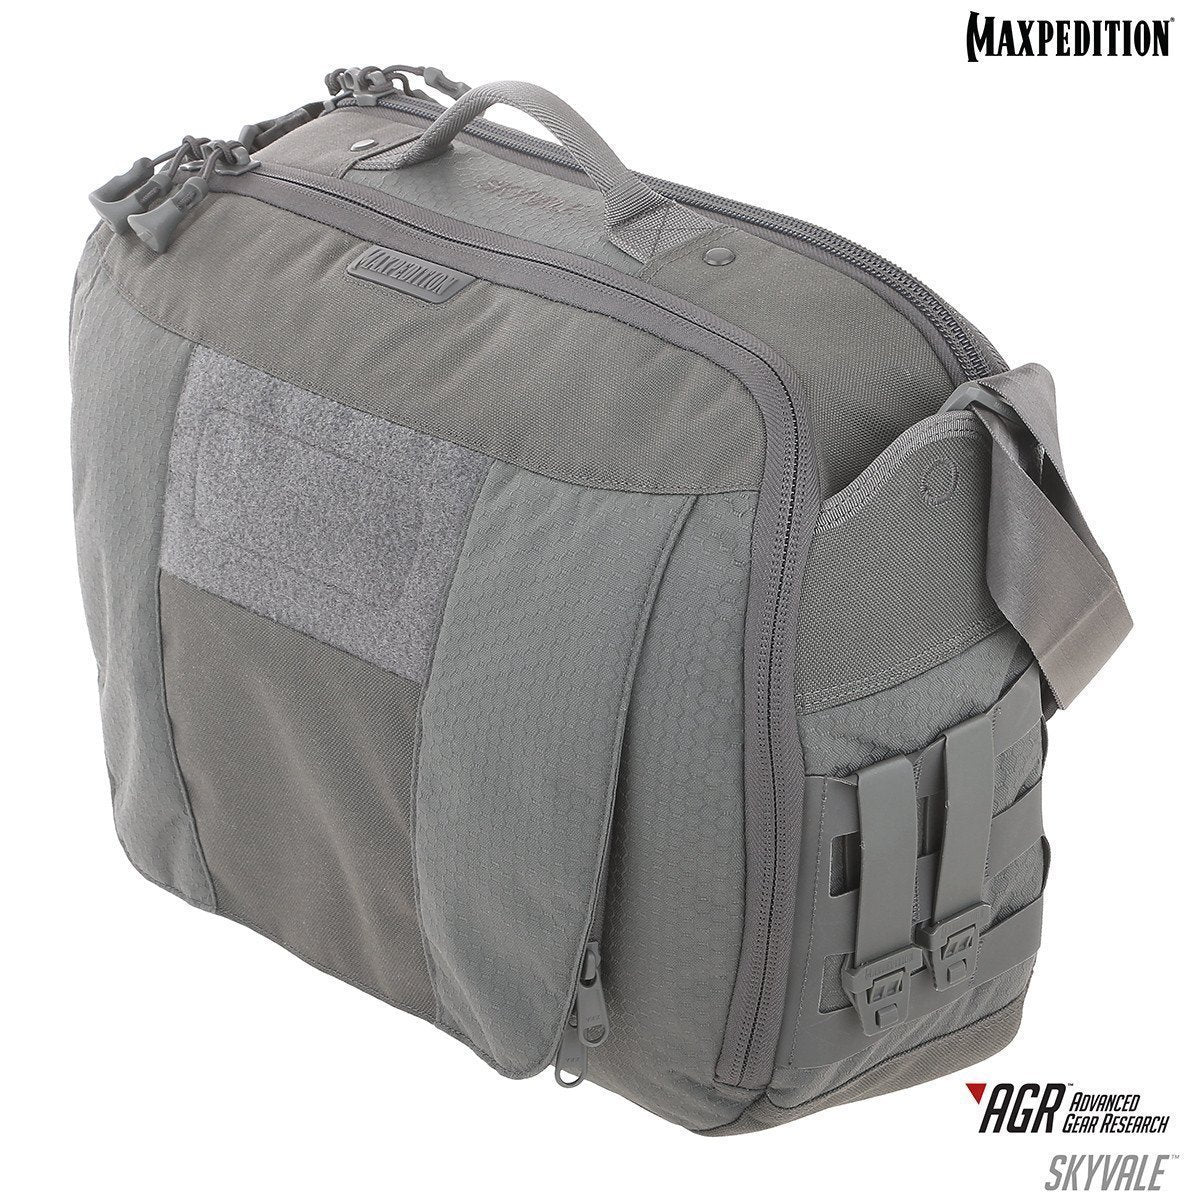 Maxpedition Skyvale Tech Messenger Bag 16L Tactical Distributors Ltd New Zealand